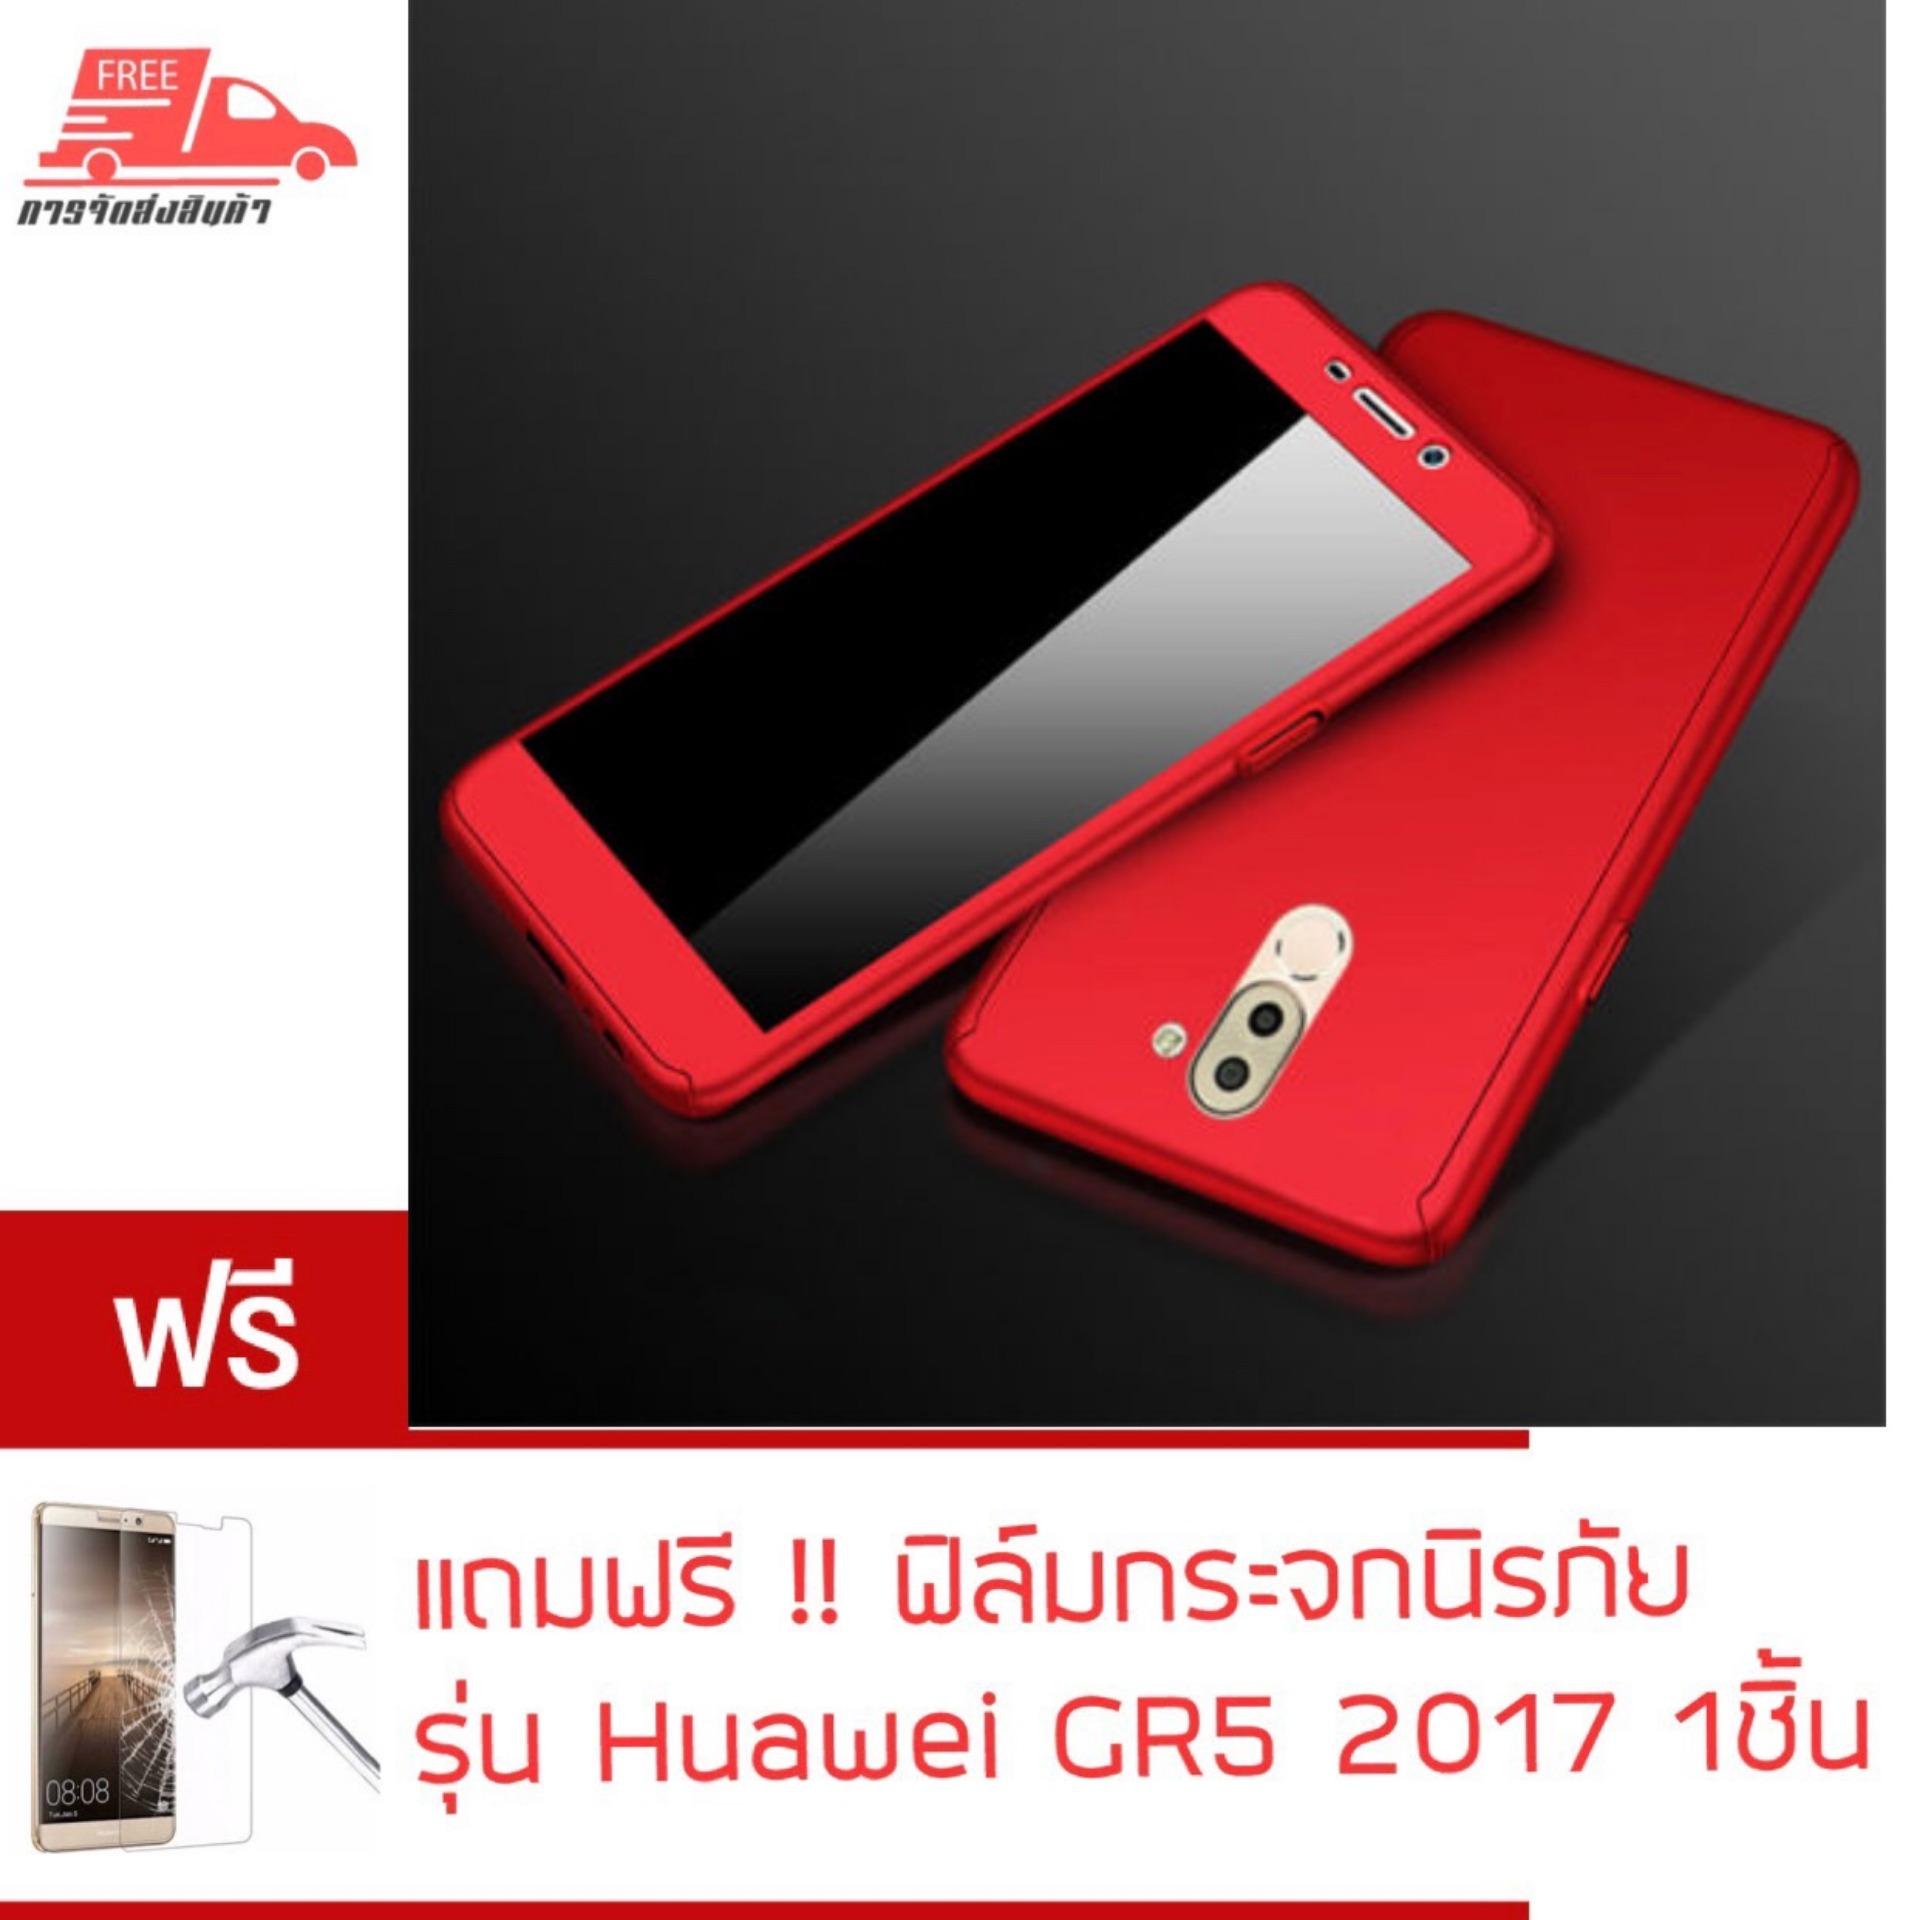 พร้อมส่ง Case Huawei GR5 2017 เคสหัวเว่ย GR5 2017 เคสประกบ 360 องศา เคสกันกระแทก สวยและบางมาก เคสประกบ สินค้าใหม่